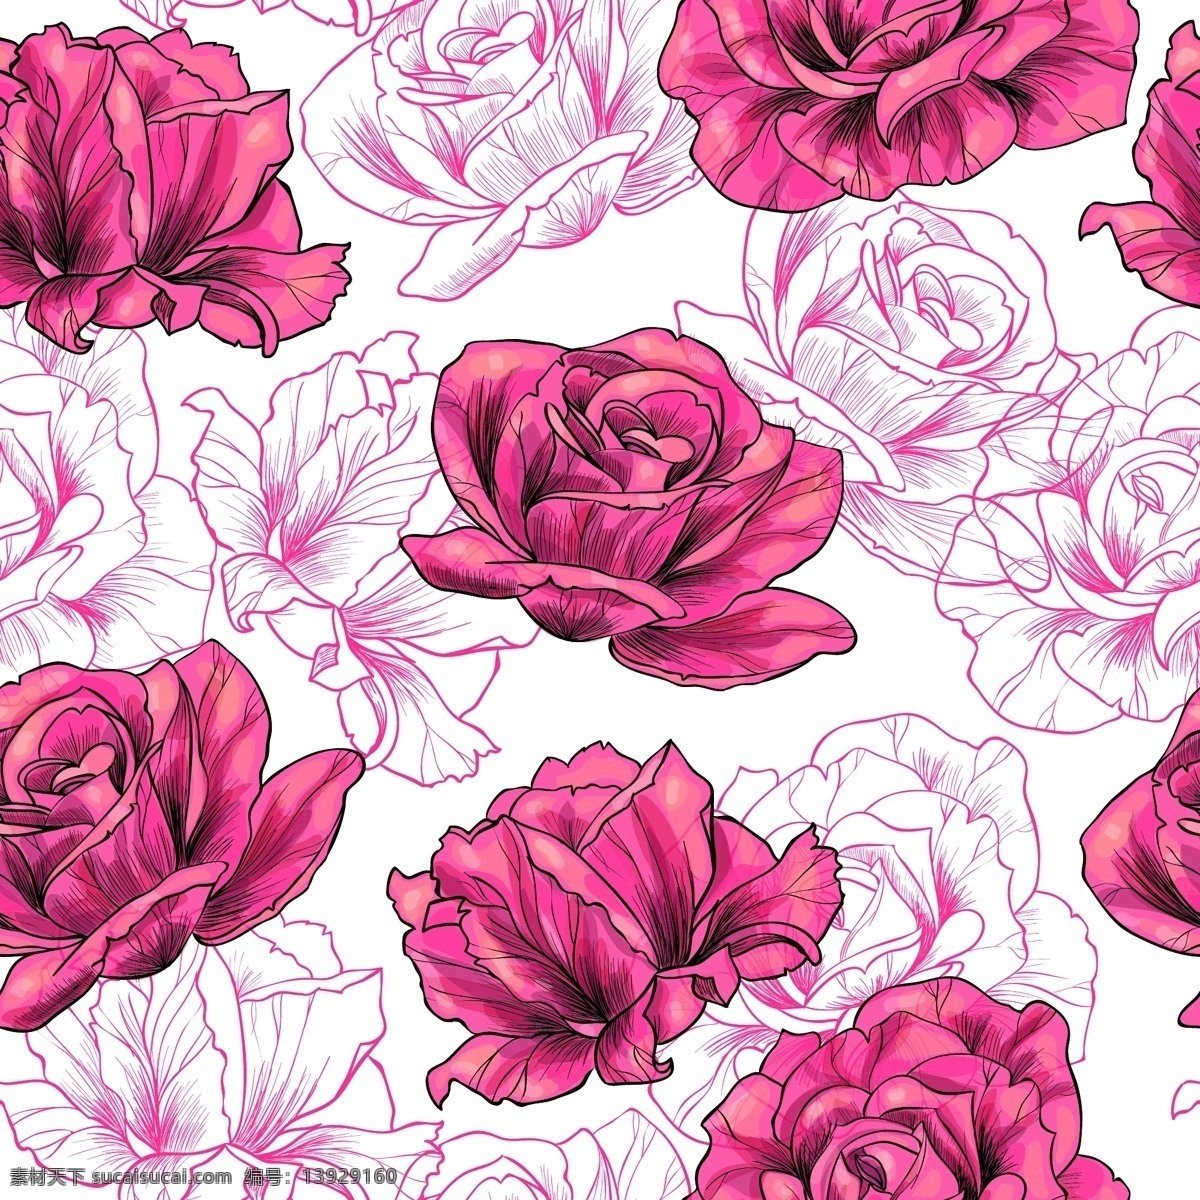 精美 玫瑰 花朵 无缝 背景 矢量 eps格式 手绘 玫瑰花 无缝背景 矢量图 白色